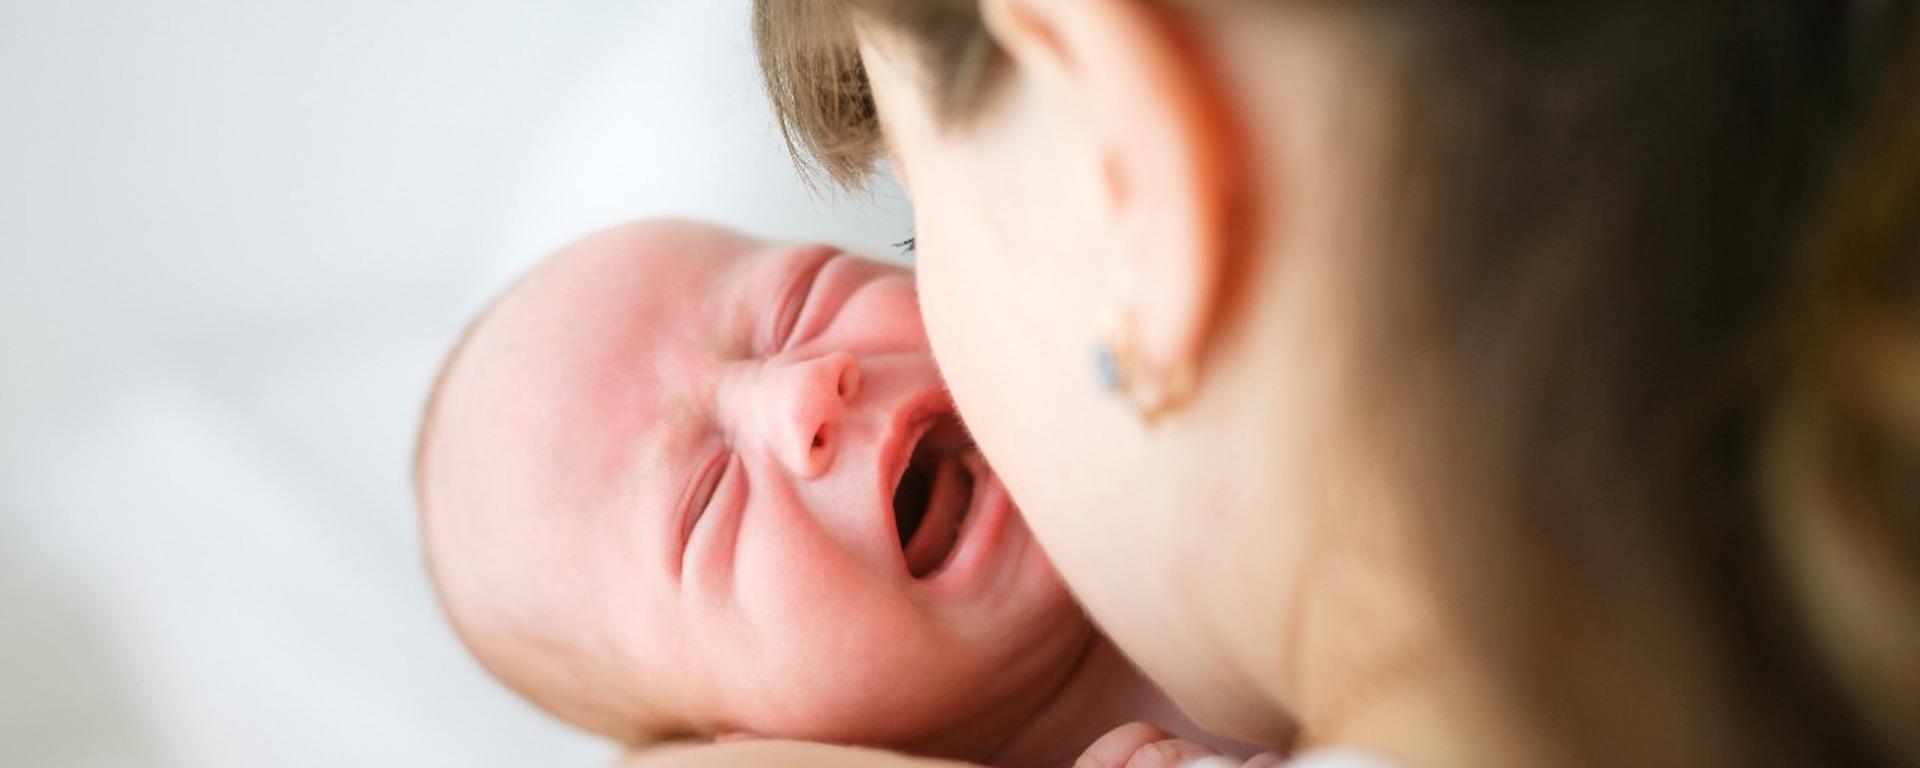 ¿Cómo calmar el llanto de un bebe? La ciencia tiene la solución